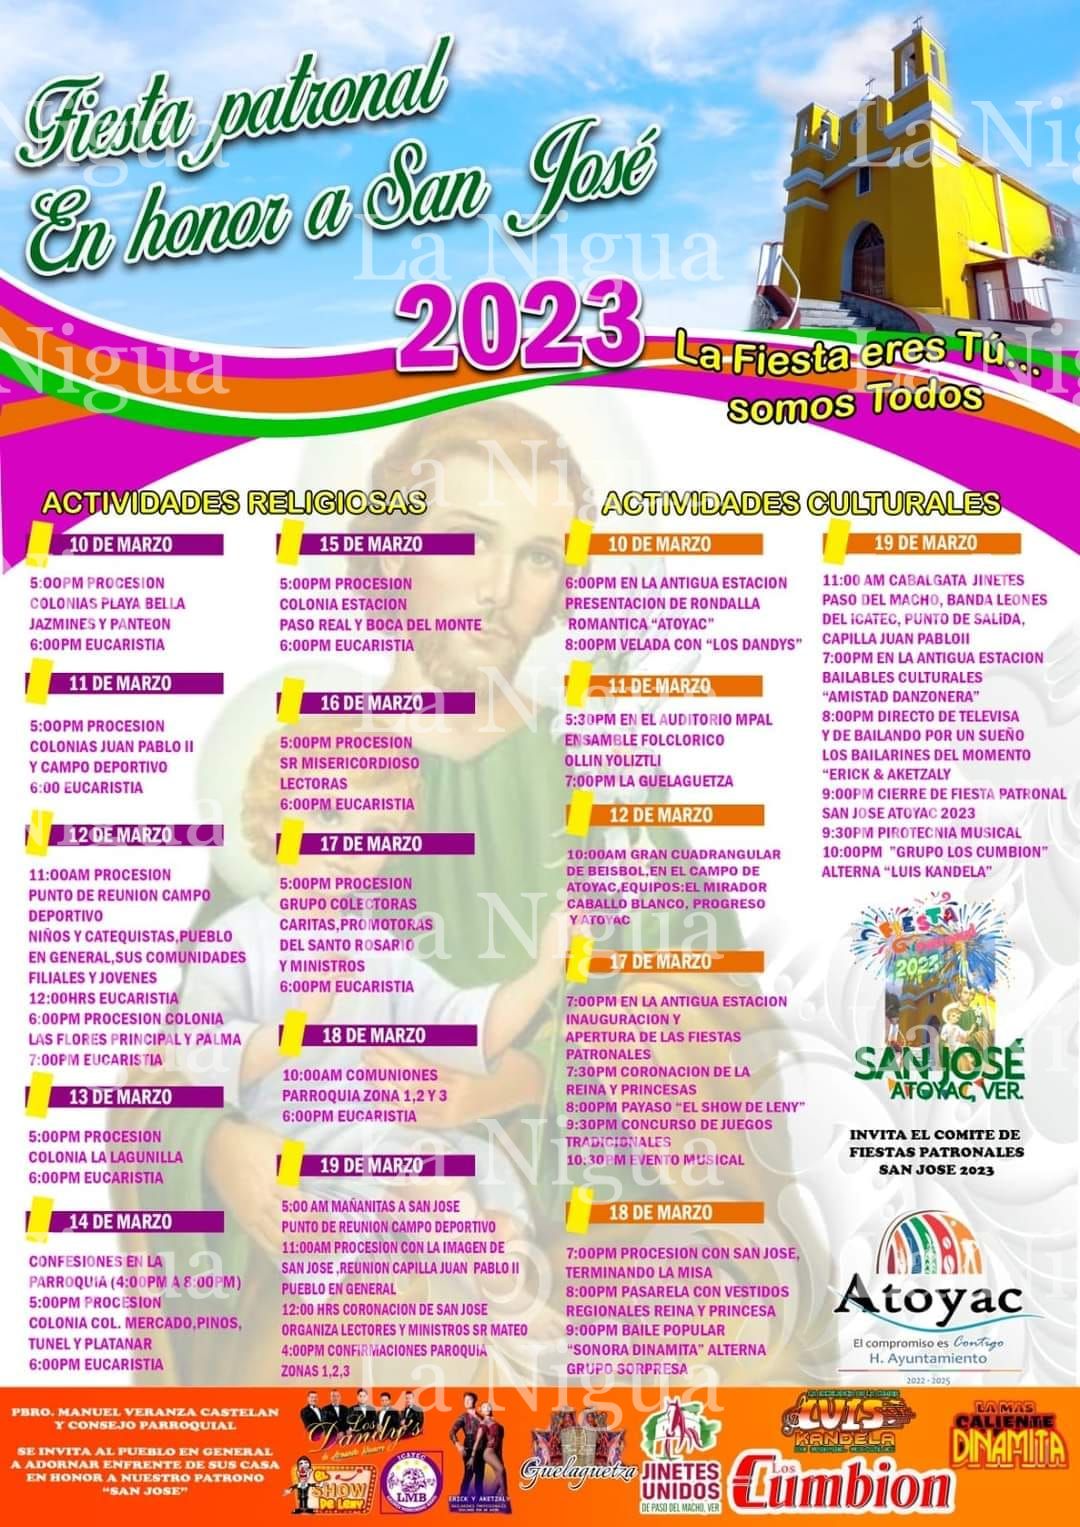 Invitan a fiestas patronales de San José en Atoyac